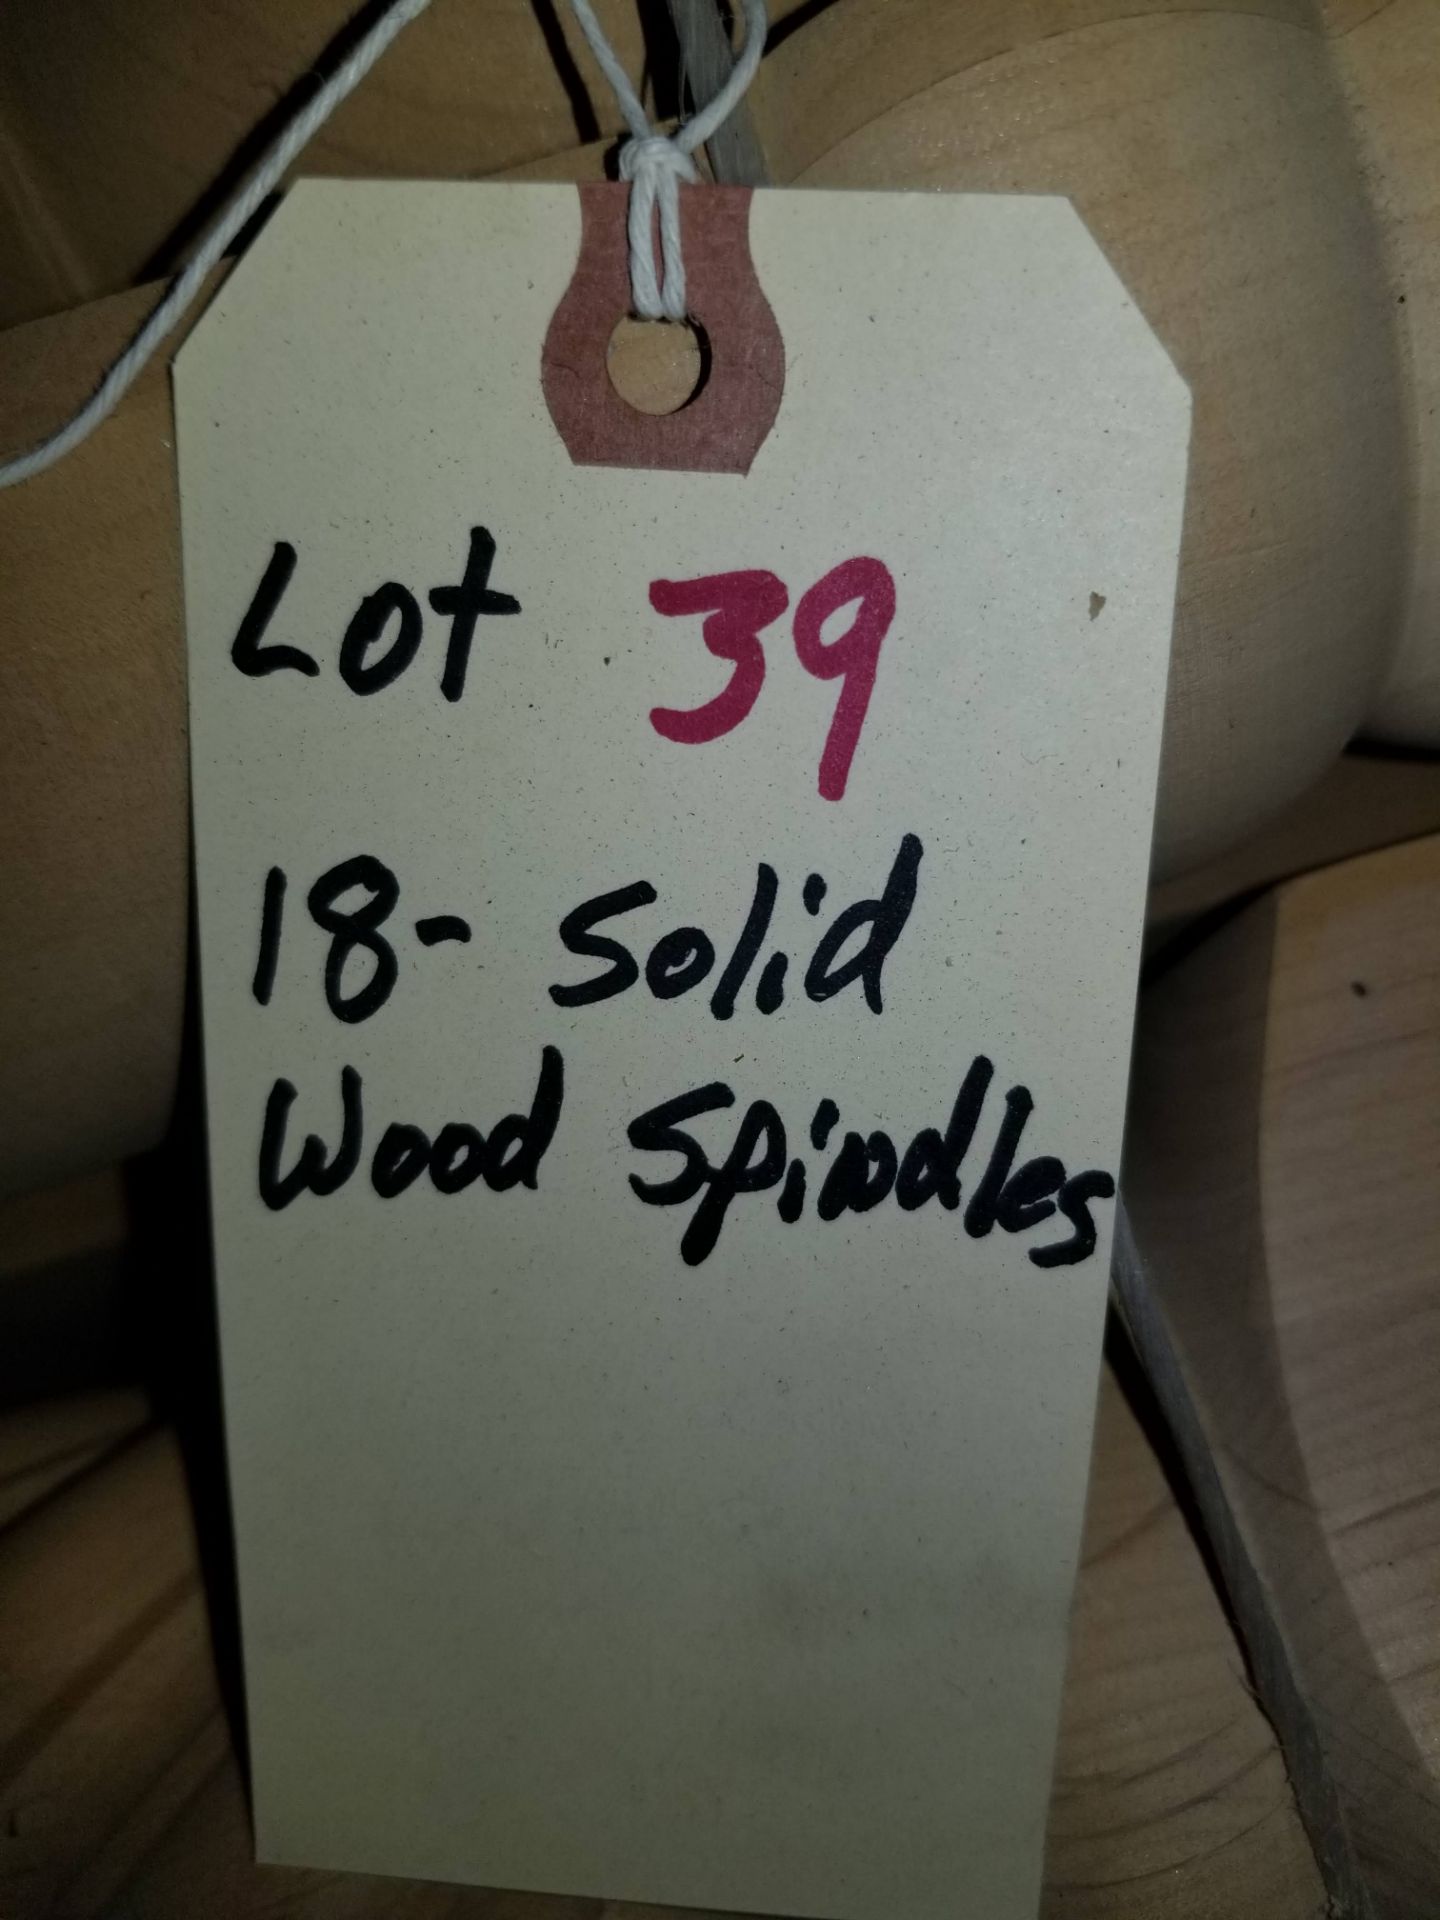 18 - Solid Fancy Hardwood Spindles - Image 6 of 6